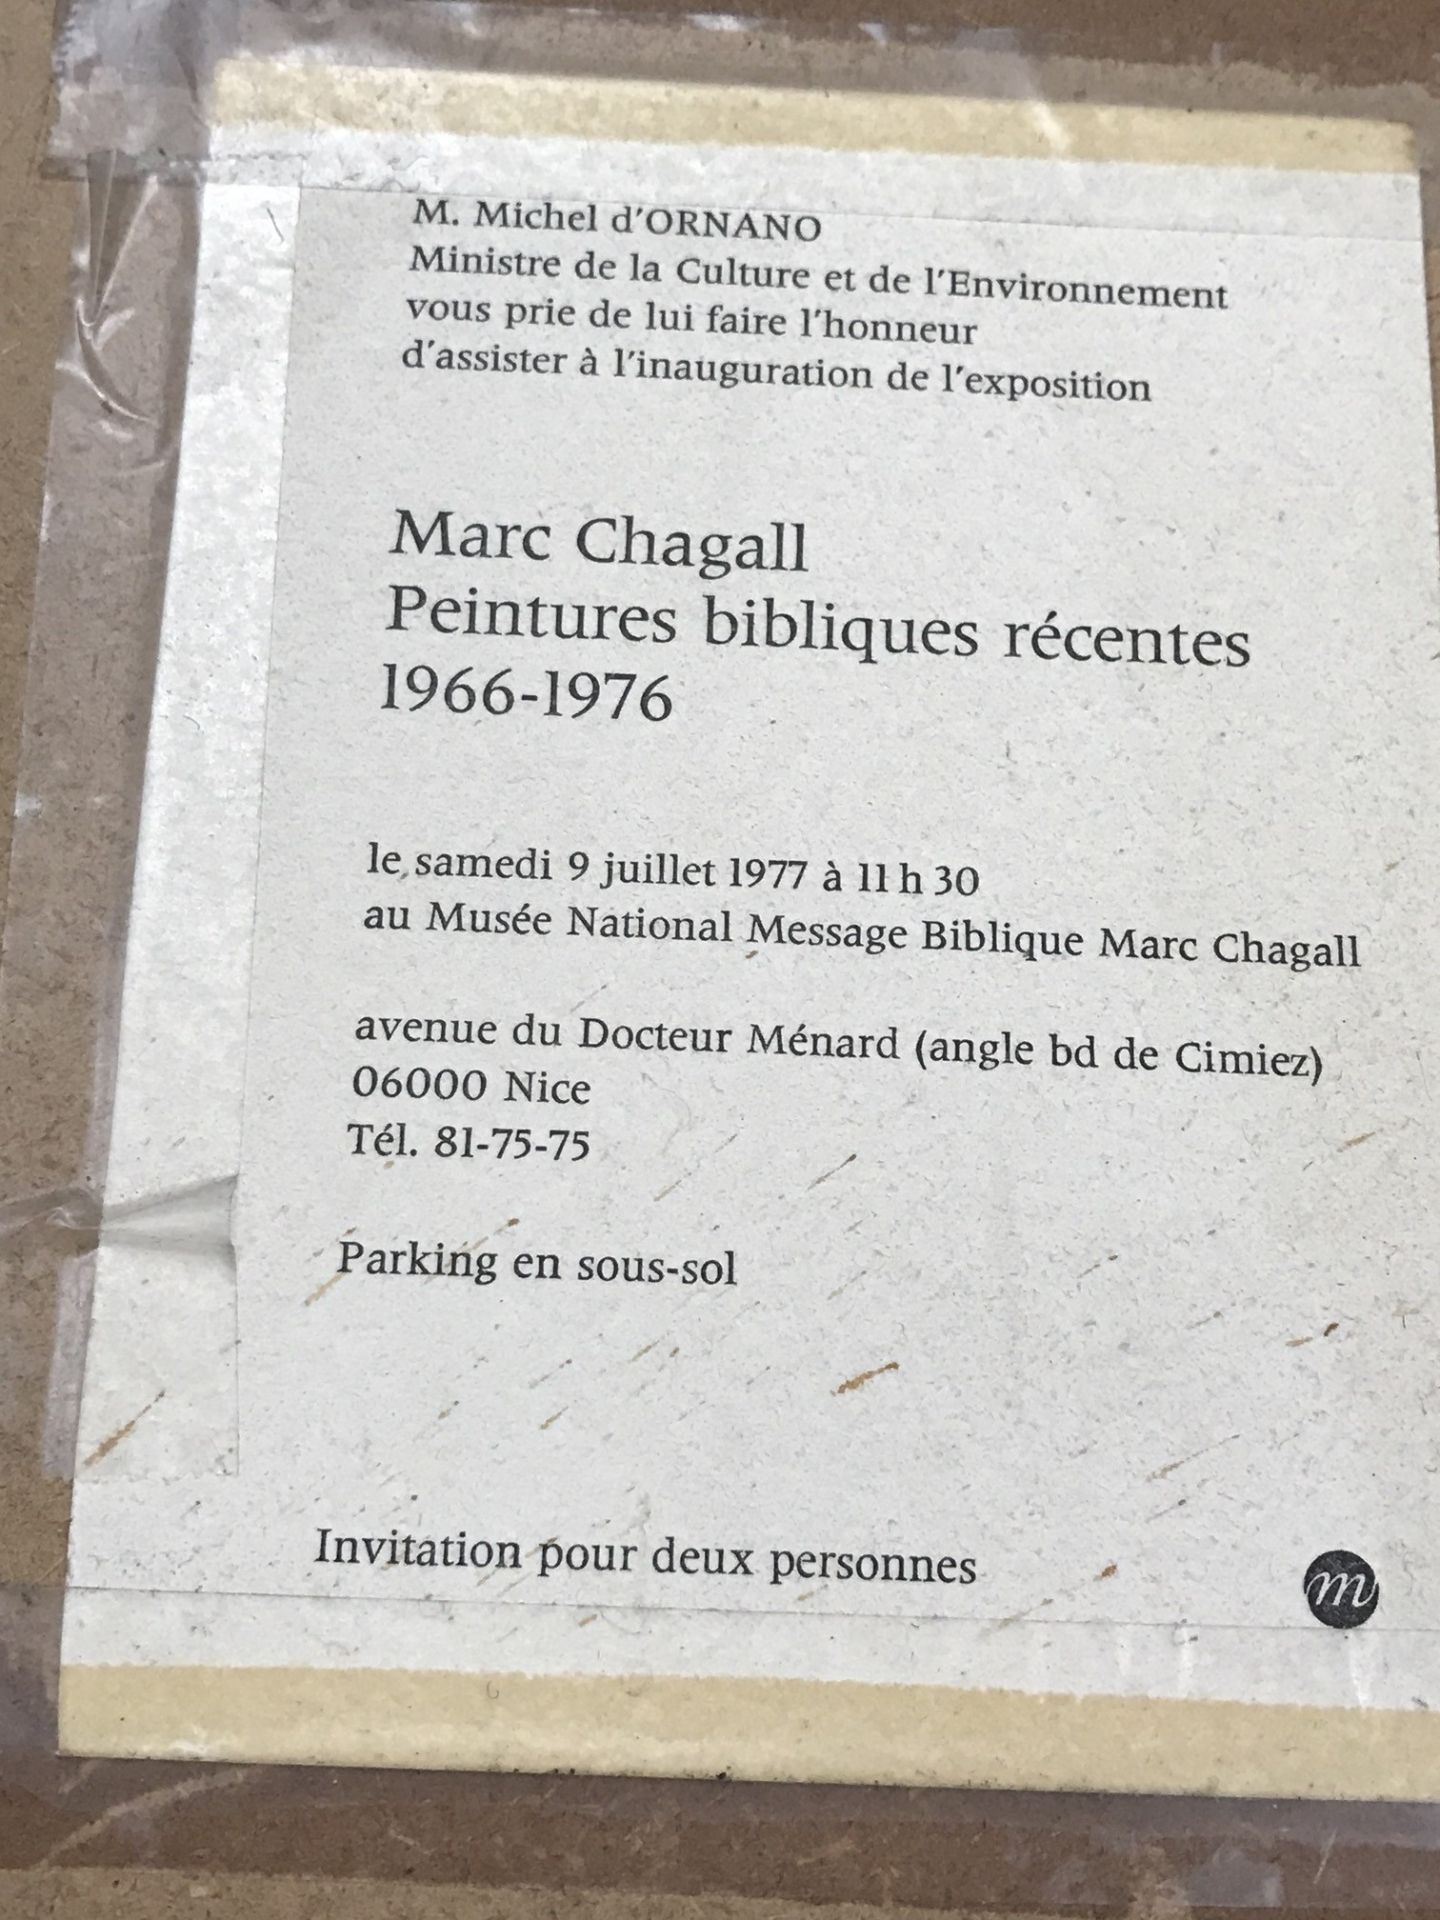 MARC CHAGALL INVITE LITHOGRAPH 14 x 11 cm - SHOW IN MARC CHAGALL BOOK OF LITHOGRAPHS - Image 4 of 6